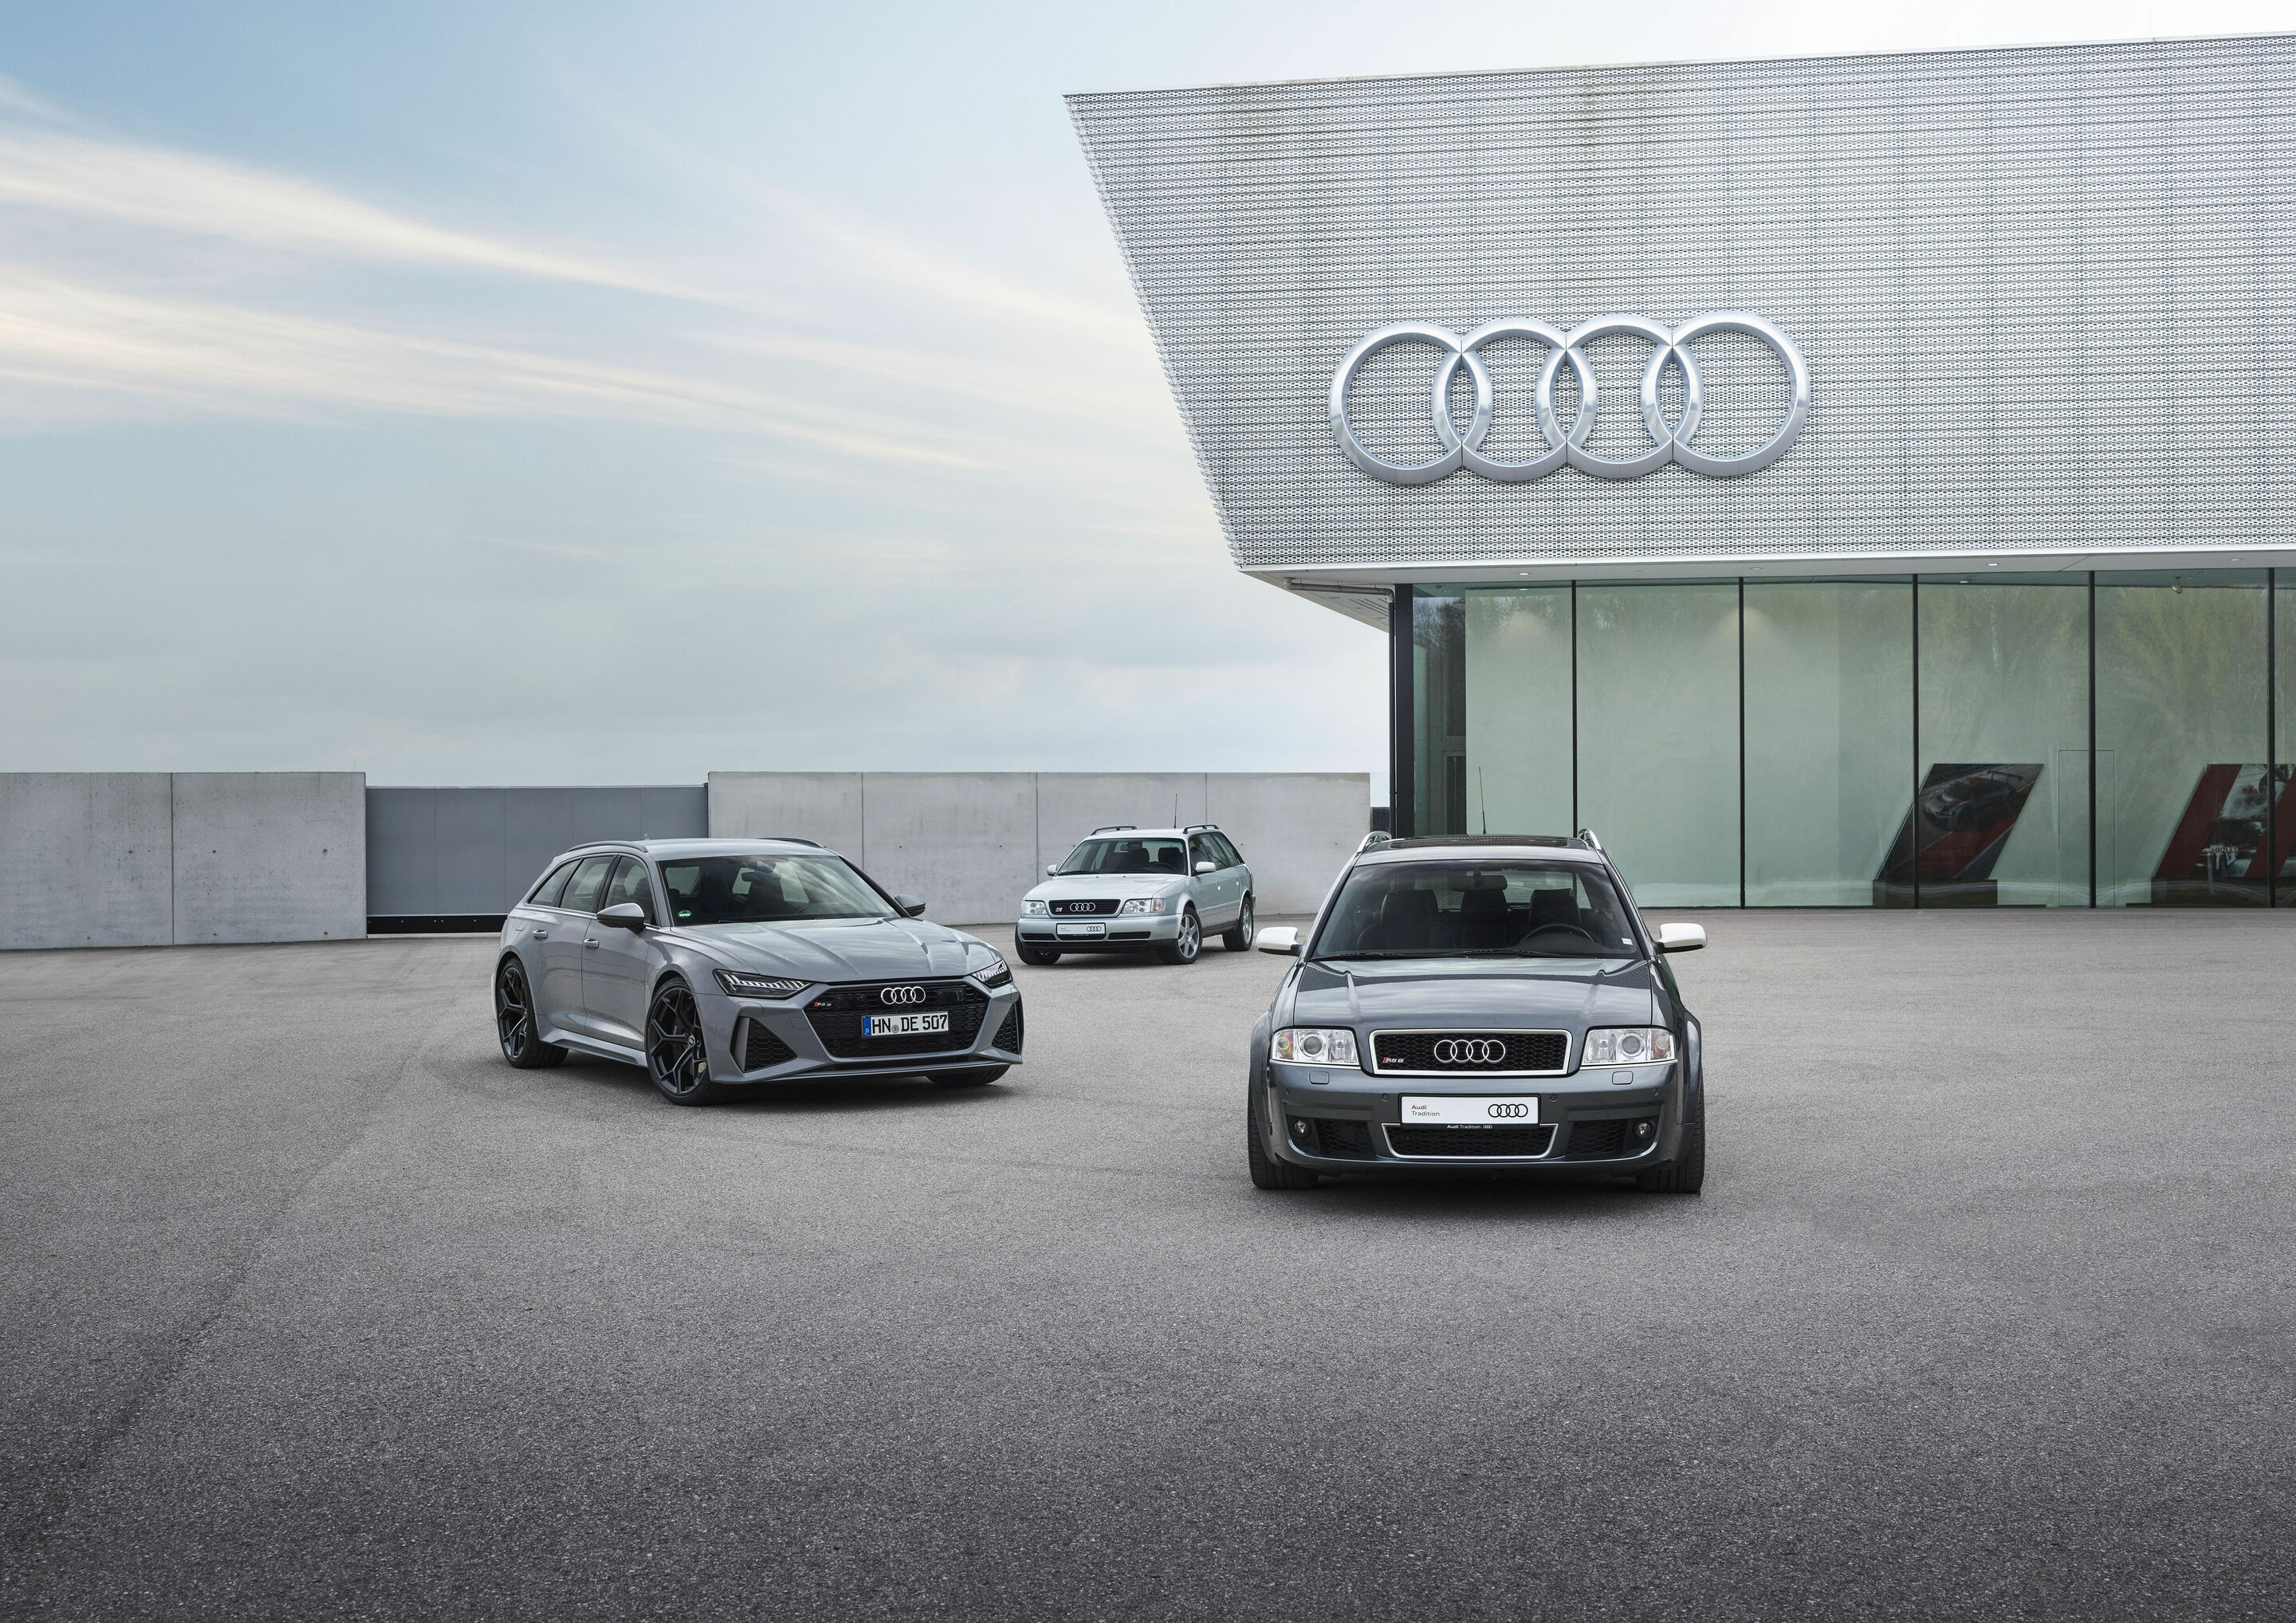 40 Jahre Audi Sport GmbH